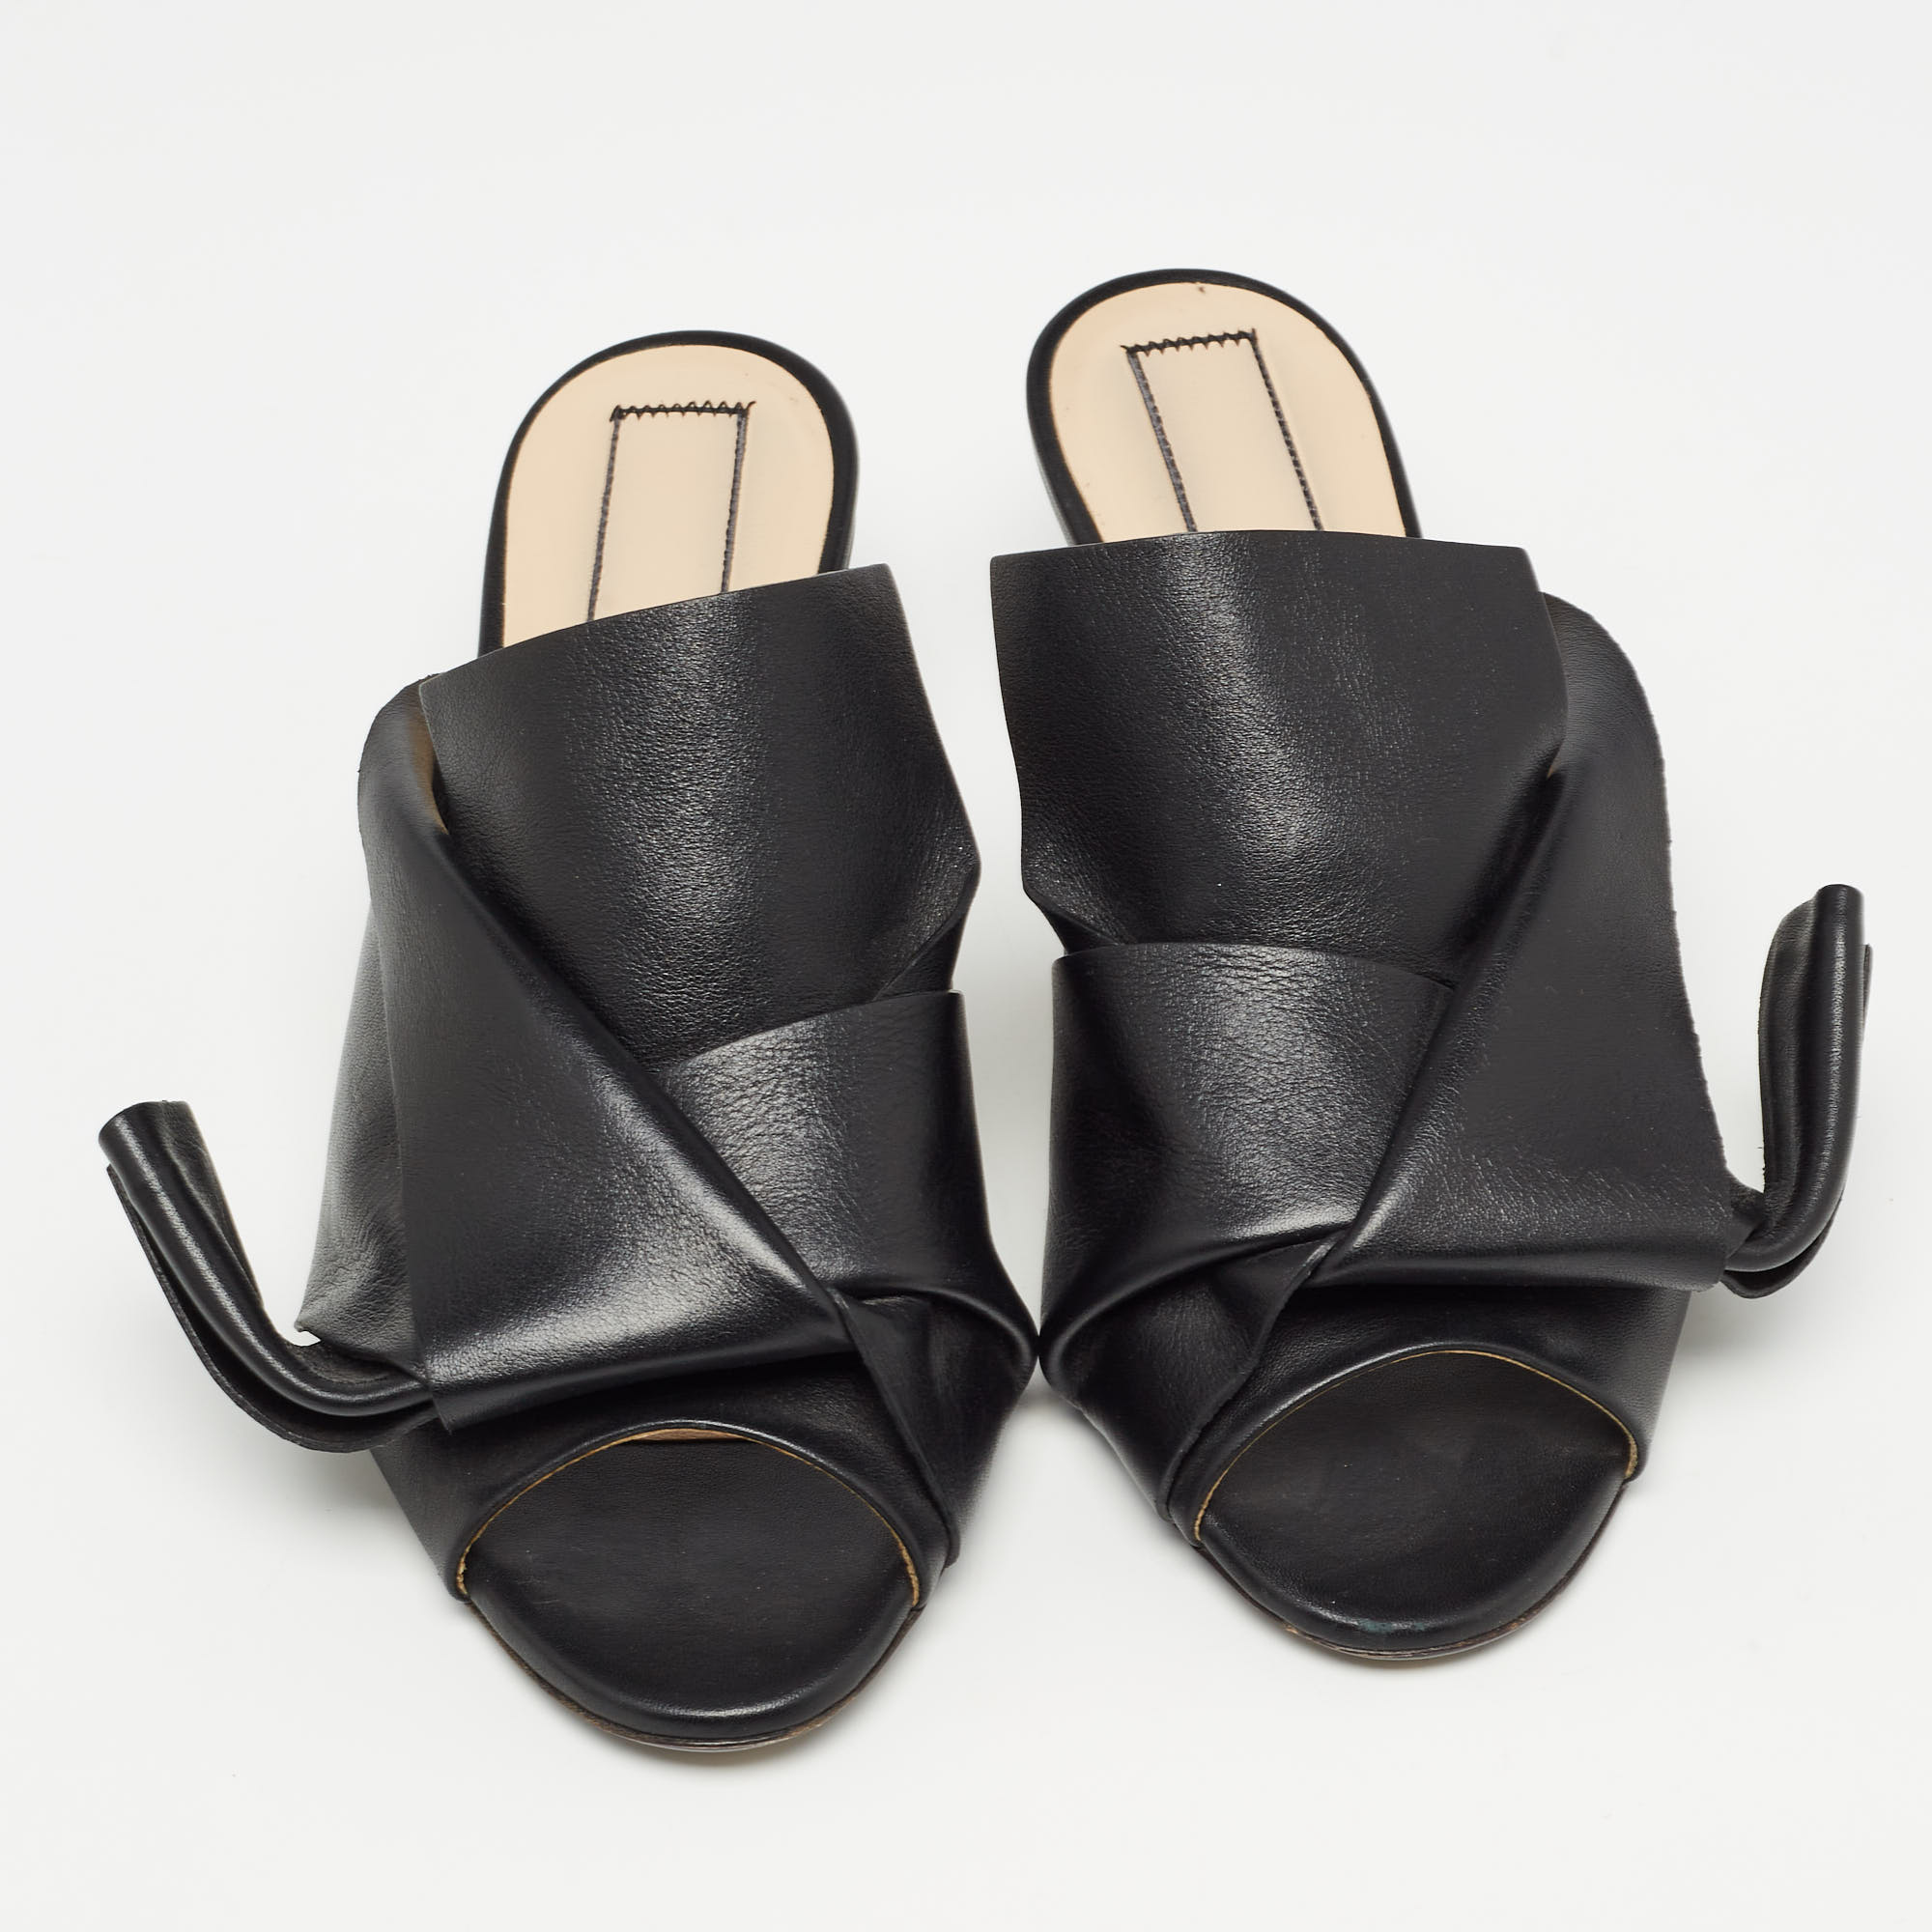 N21 Black Leather Knot Slide Sandals Size 37